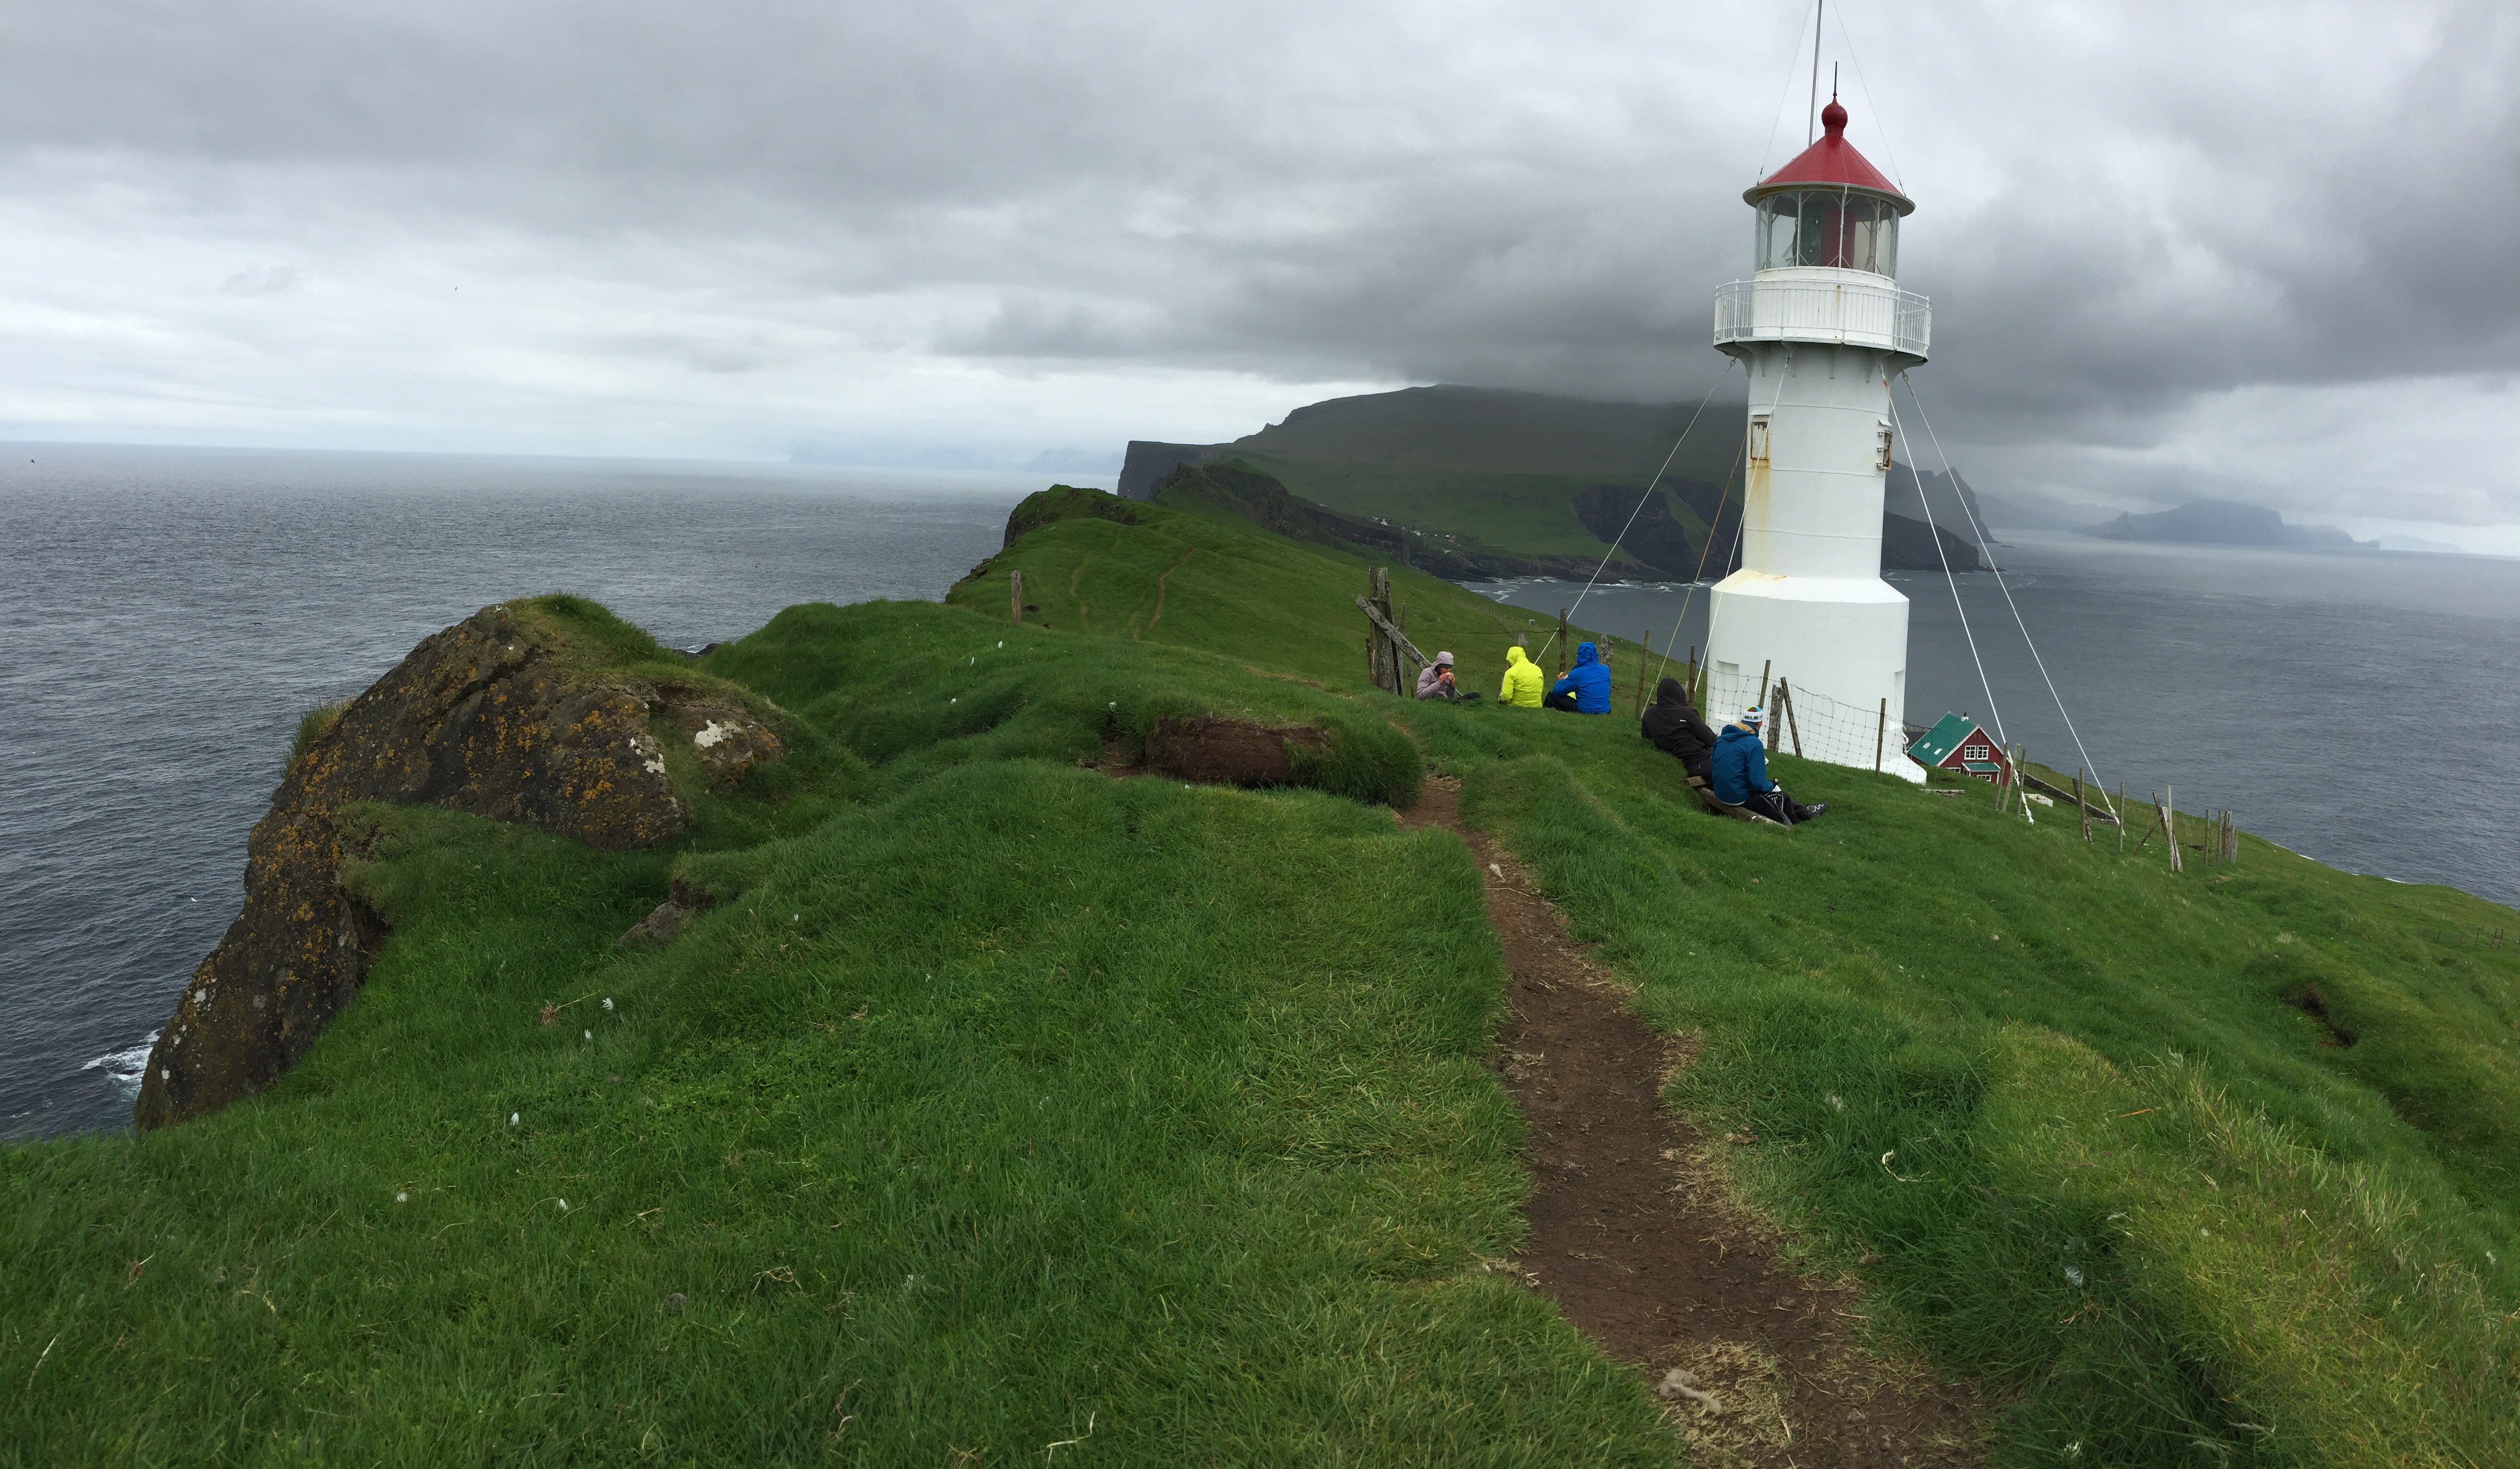 Diario de Viaje Islas Feroe - El Reino de Thor - Blogs de Dinamarca - DIA 2 - Mykines, el hogar de los frailecillos (10)